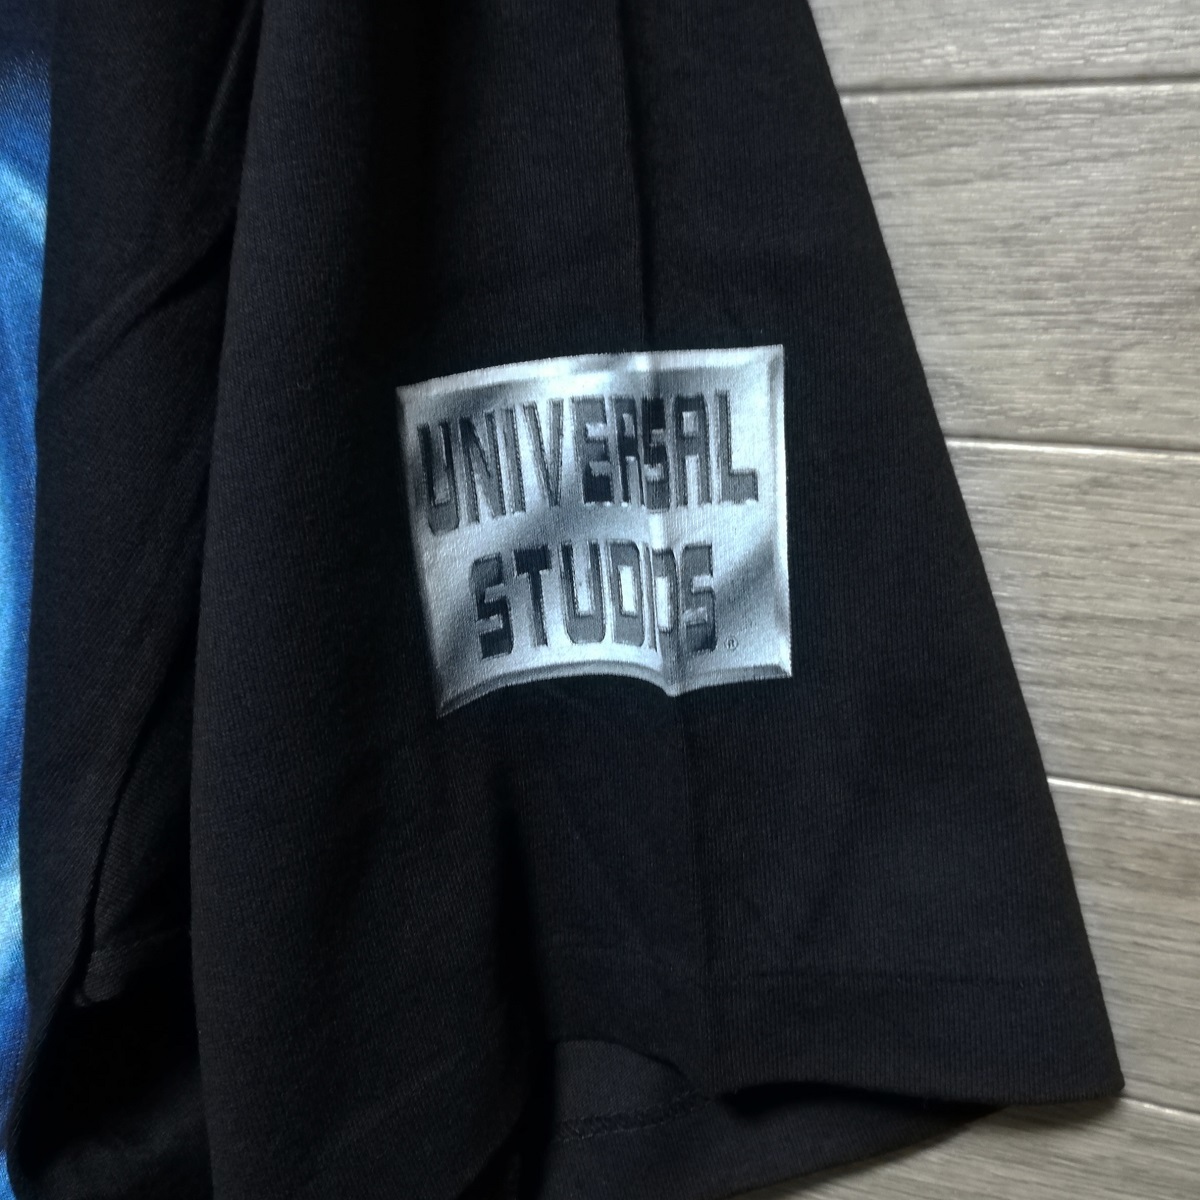 TERMINATOR 2 ターミネーター T2 UNIVERSAL STUDIOS ユニバーサルスタジオ USA製 Tシャツ XL size 黒 ブラック 新品 未使用 90s ビンテージの画像9